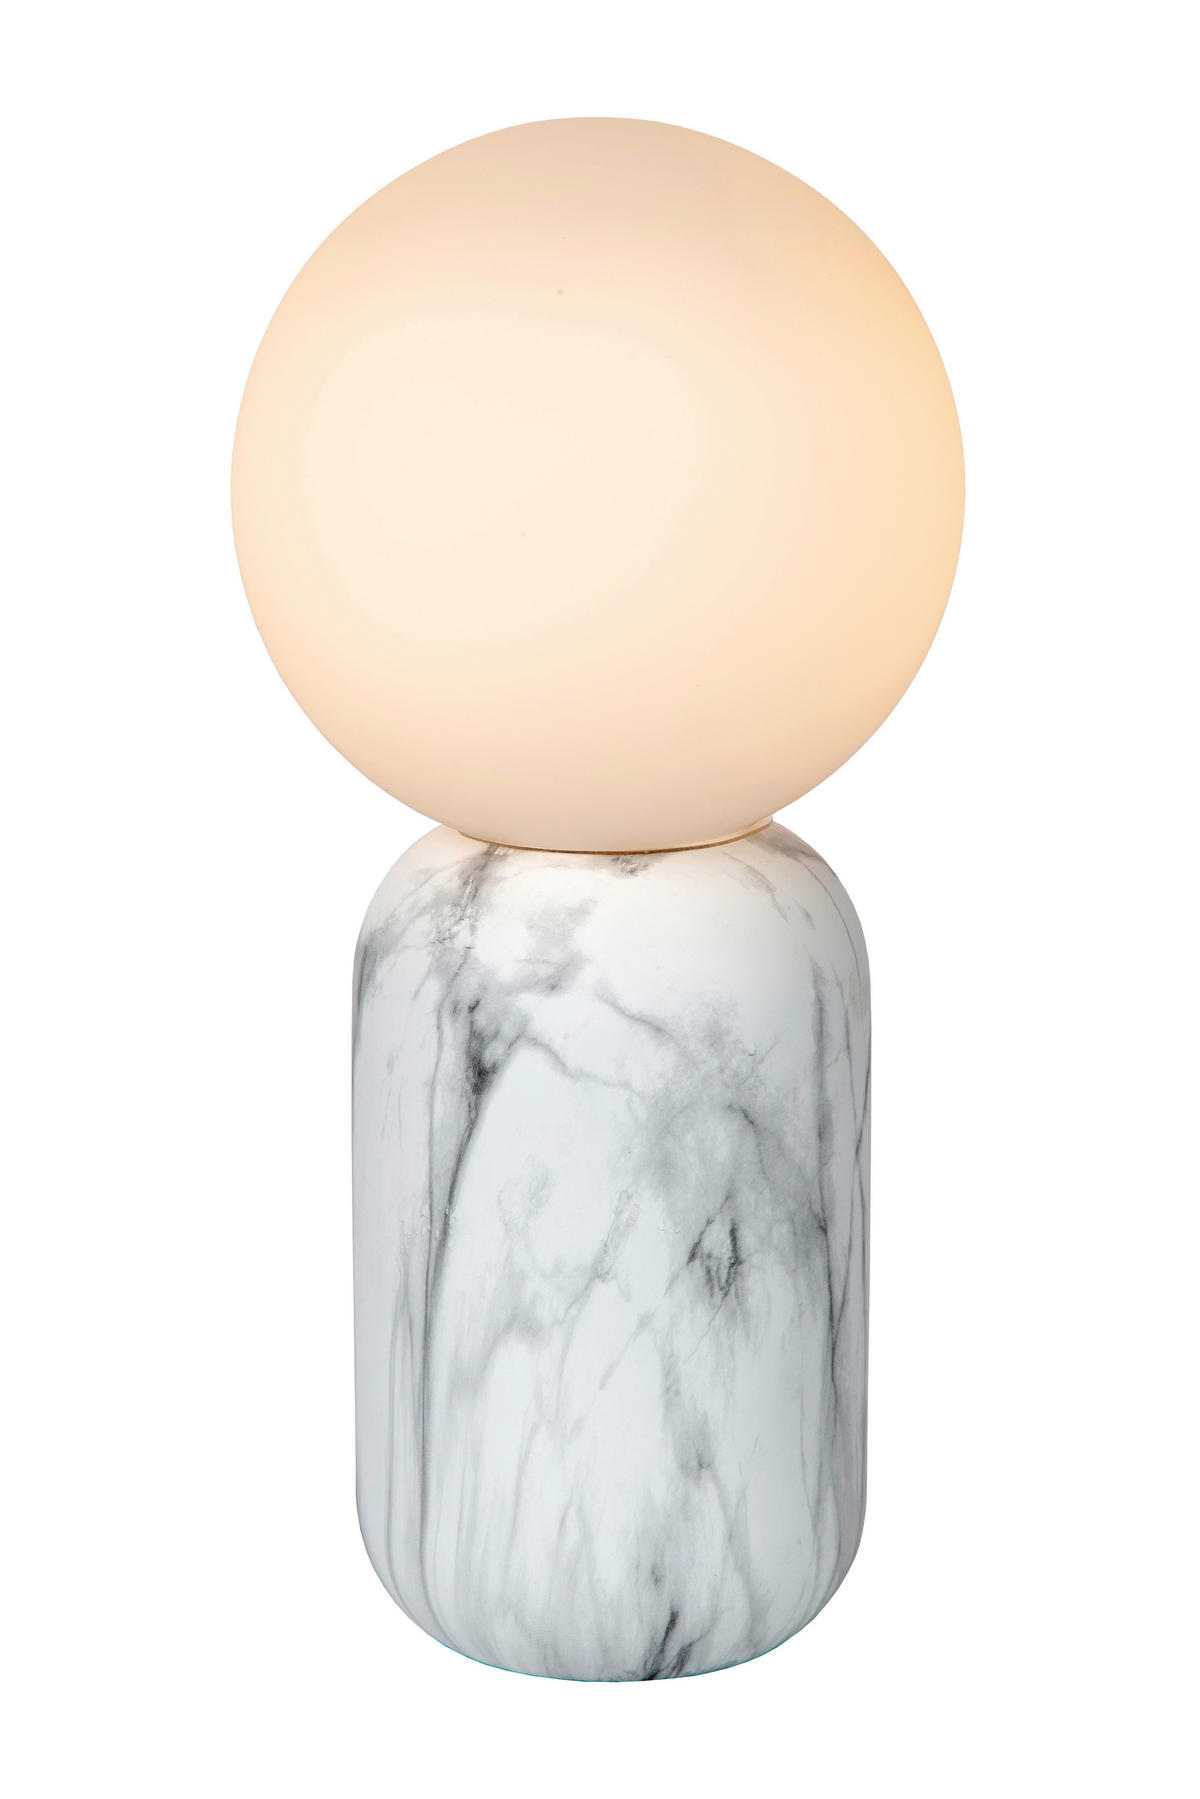 TISCHLEUCHTE MARBOL  - Opal, Design, Glas/Metall (15/15/32cm) - Lucide